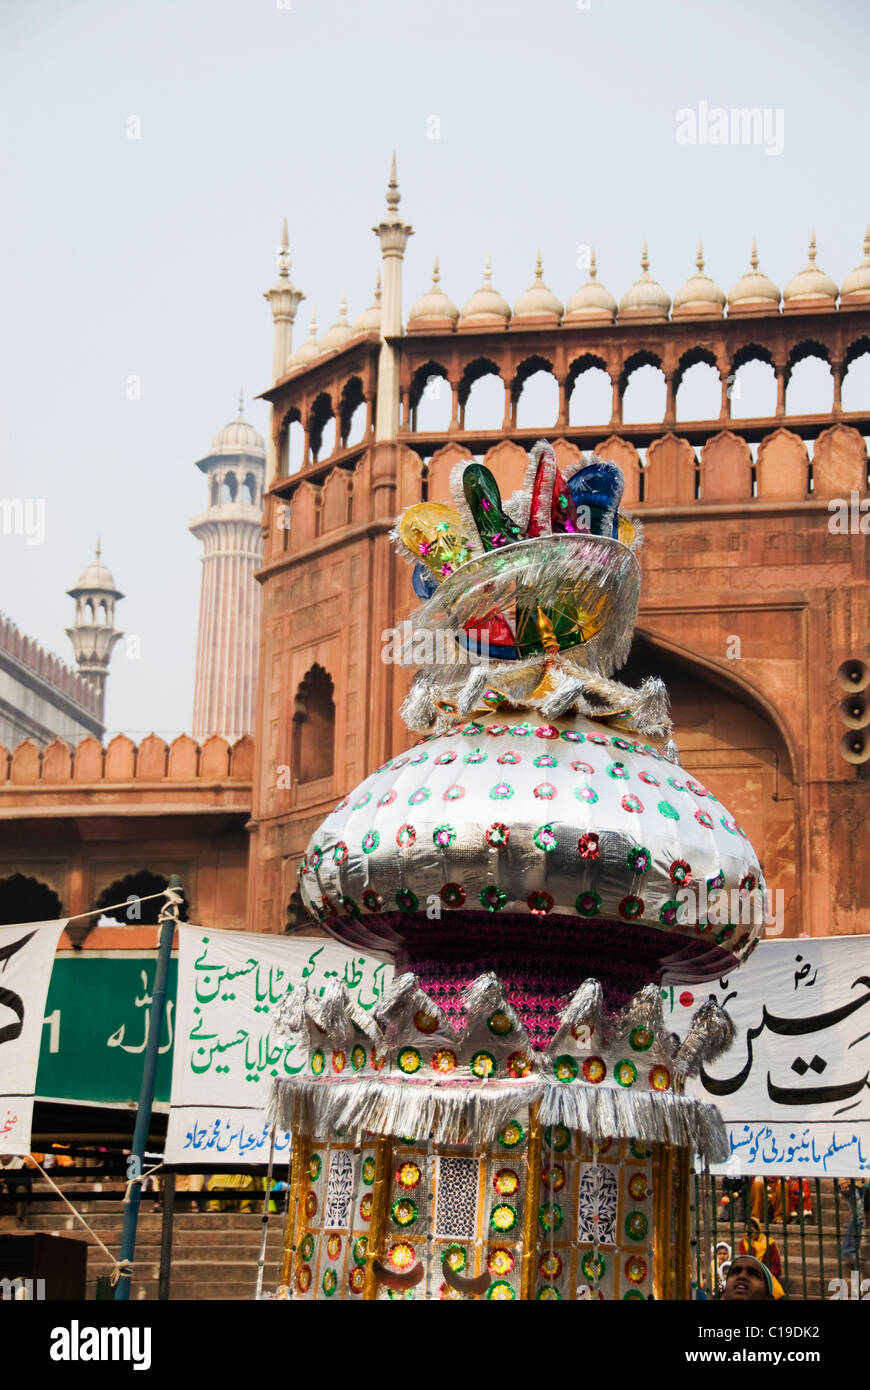 Tazia décorées dans une mosquée pendant Muharram, Jama Masjid, Delhi, Inde Banque D'Images